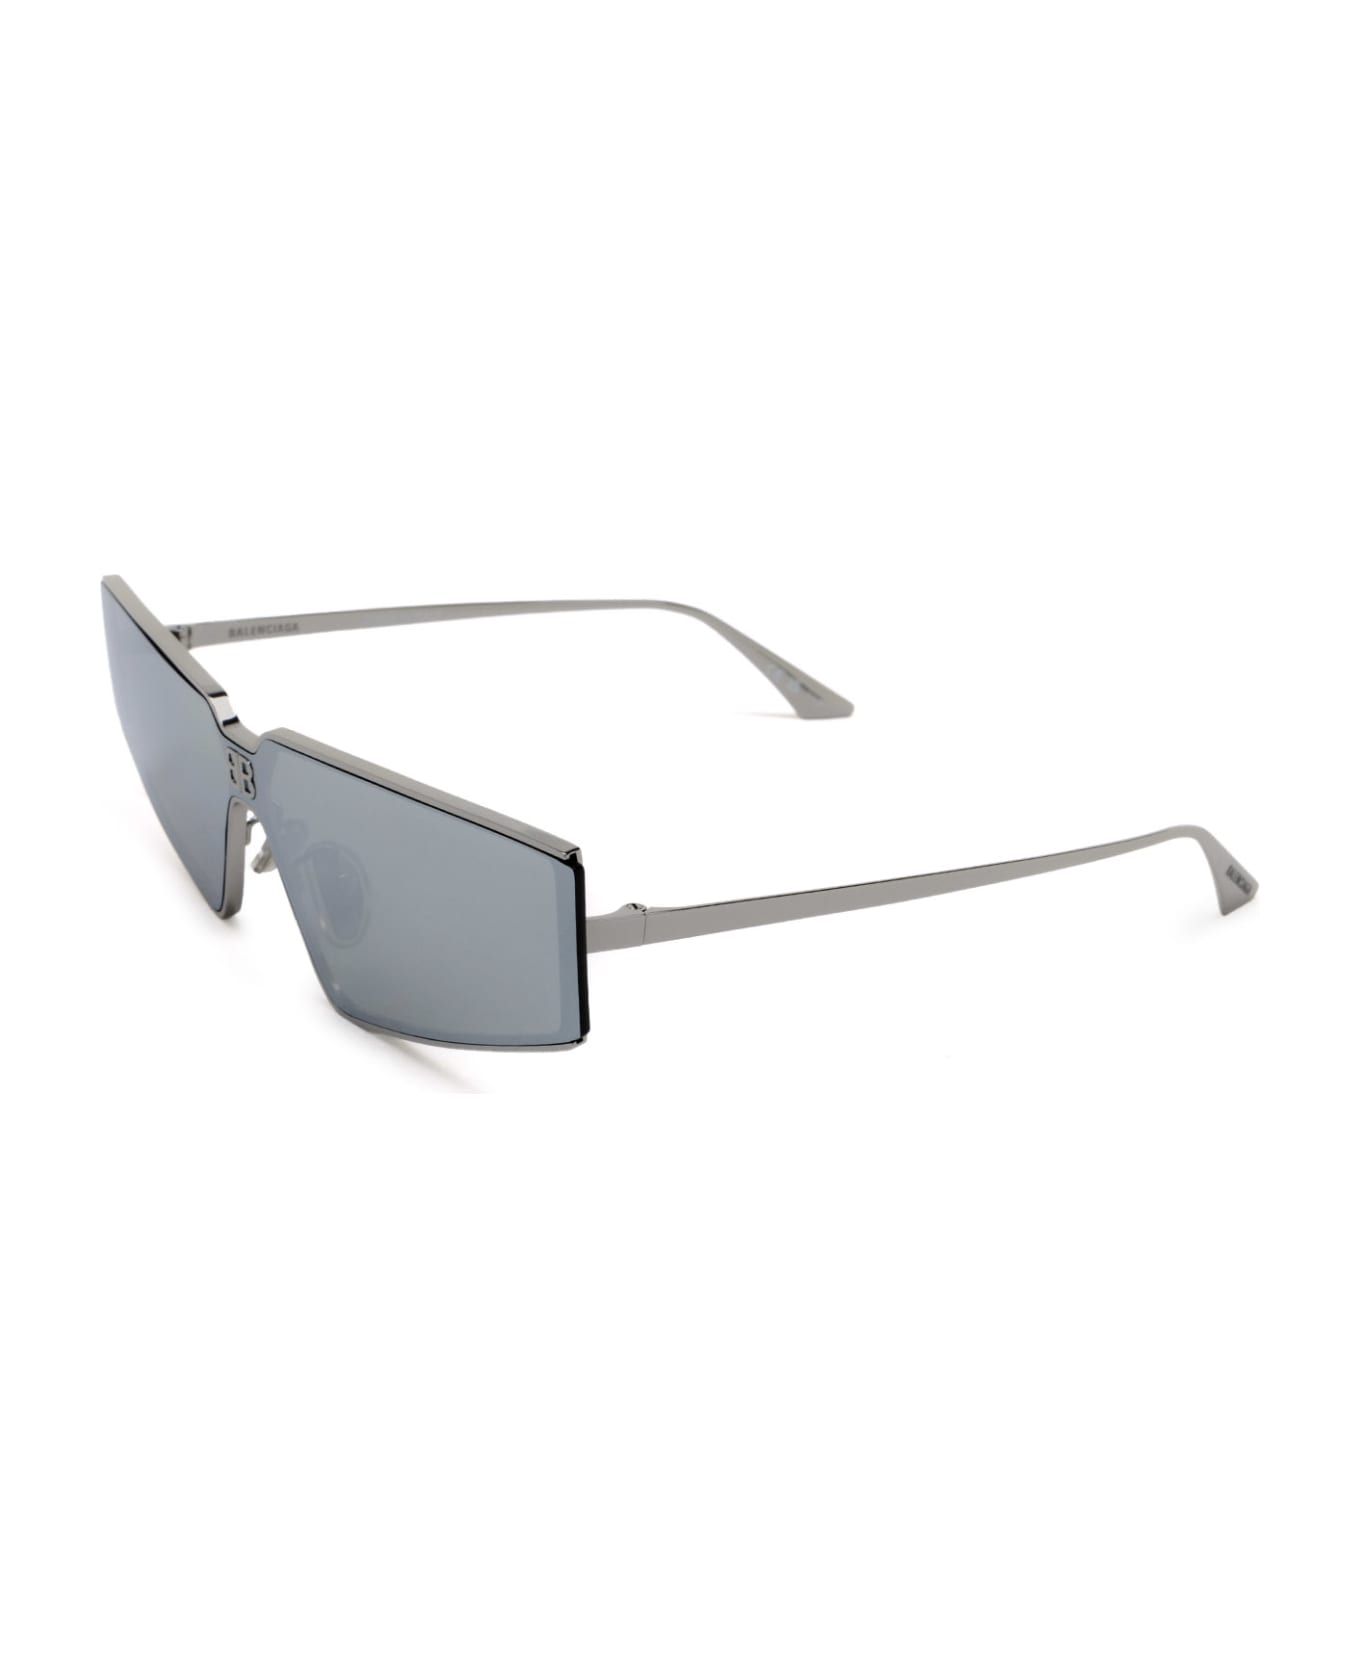 Balenciaga Eyewear Bb0192s Ruthenium Sunglasses - Ruthenium サングラス